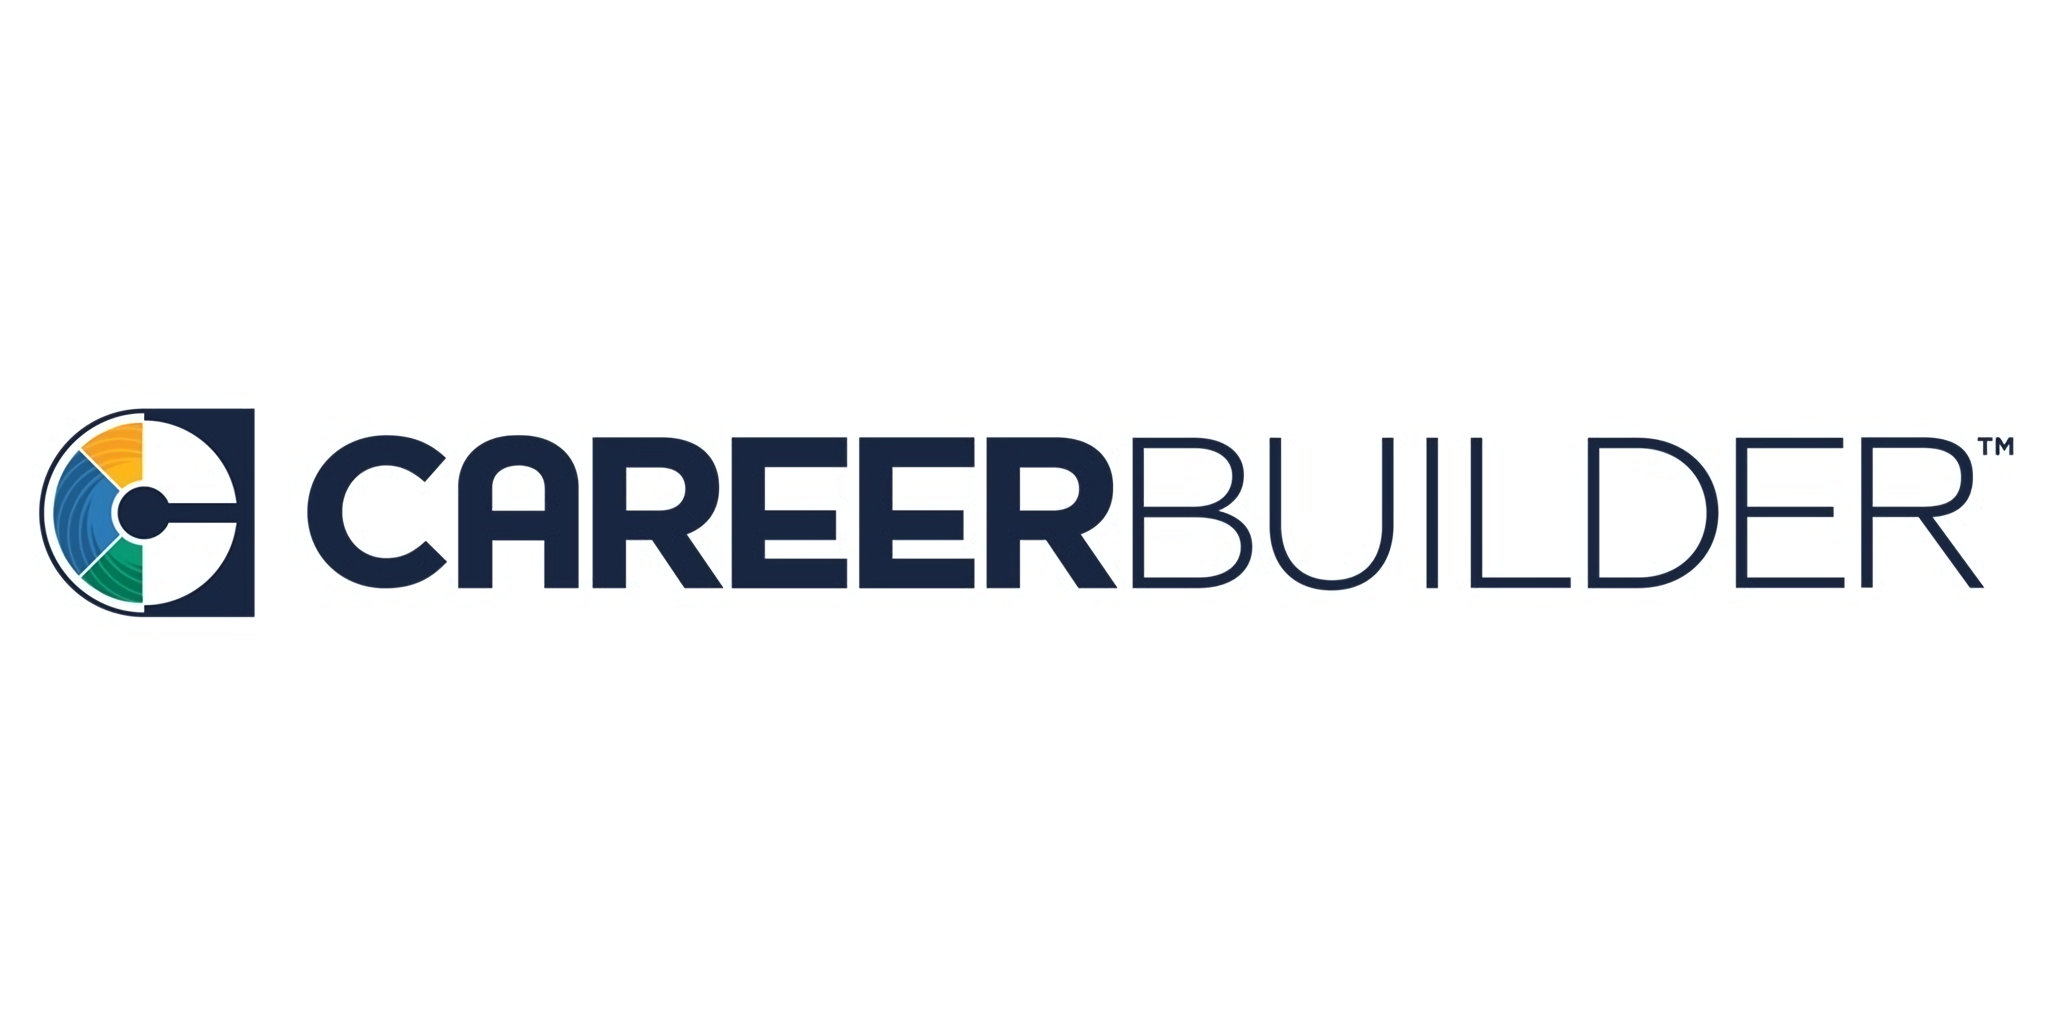 CareerBuilder là một trang web tuyển dụng rất hữu ích cho những người đang tìm kiếm việc làm